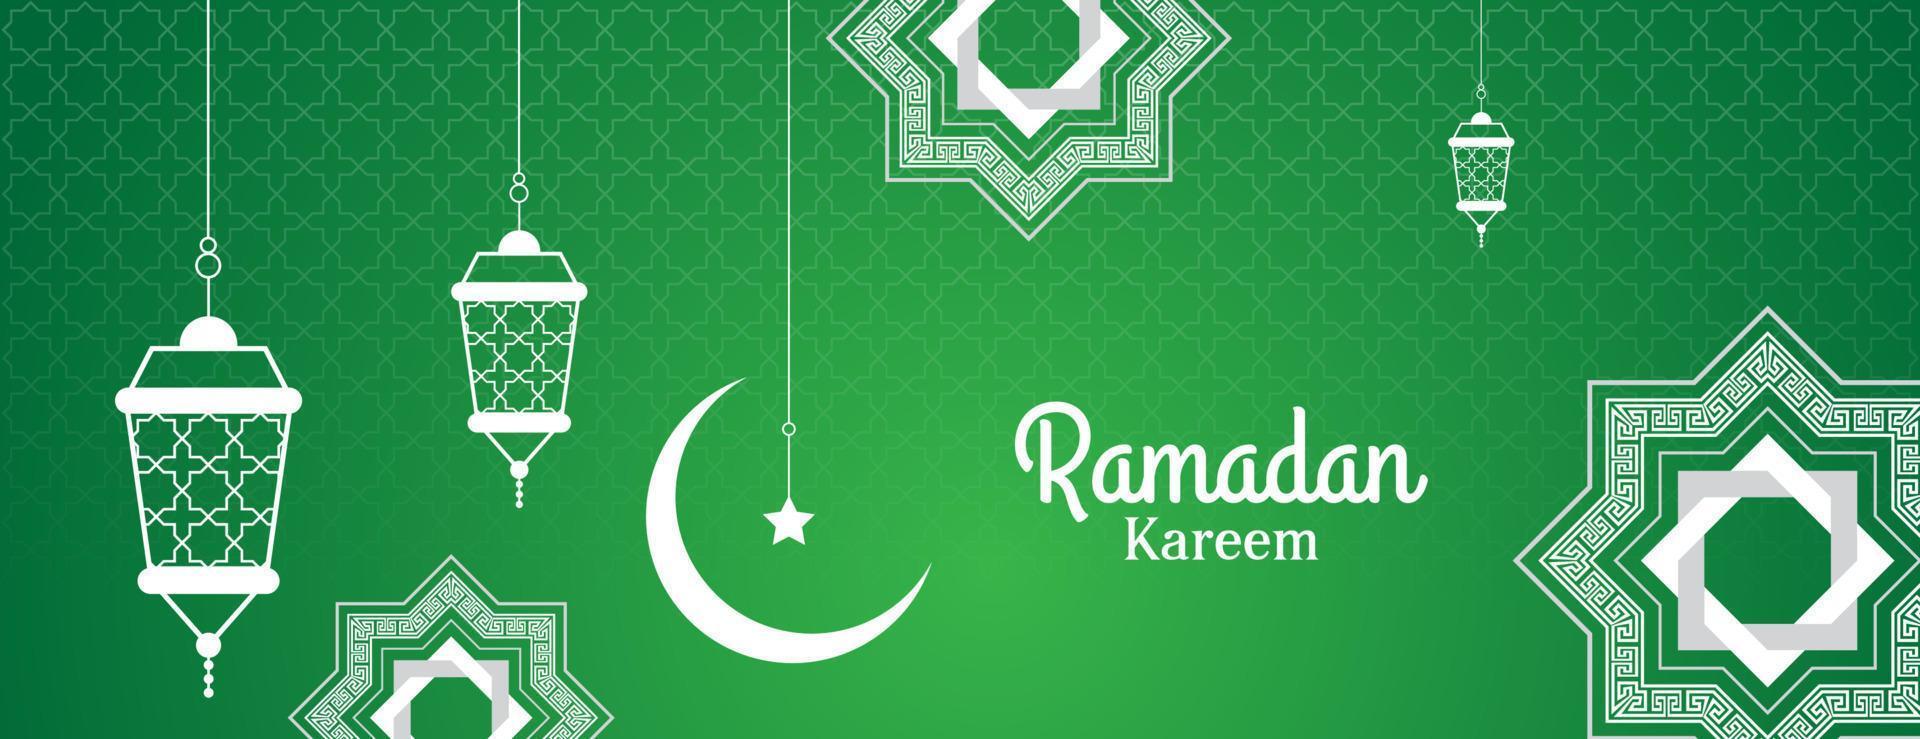 conception de bannière ramadan kareem avec décoration islamique lanterne, lune, étoile et mandala. illustration vectorielle vecteur